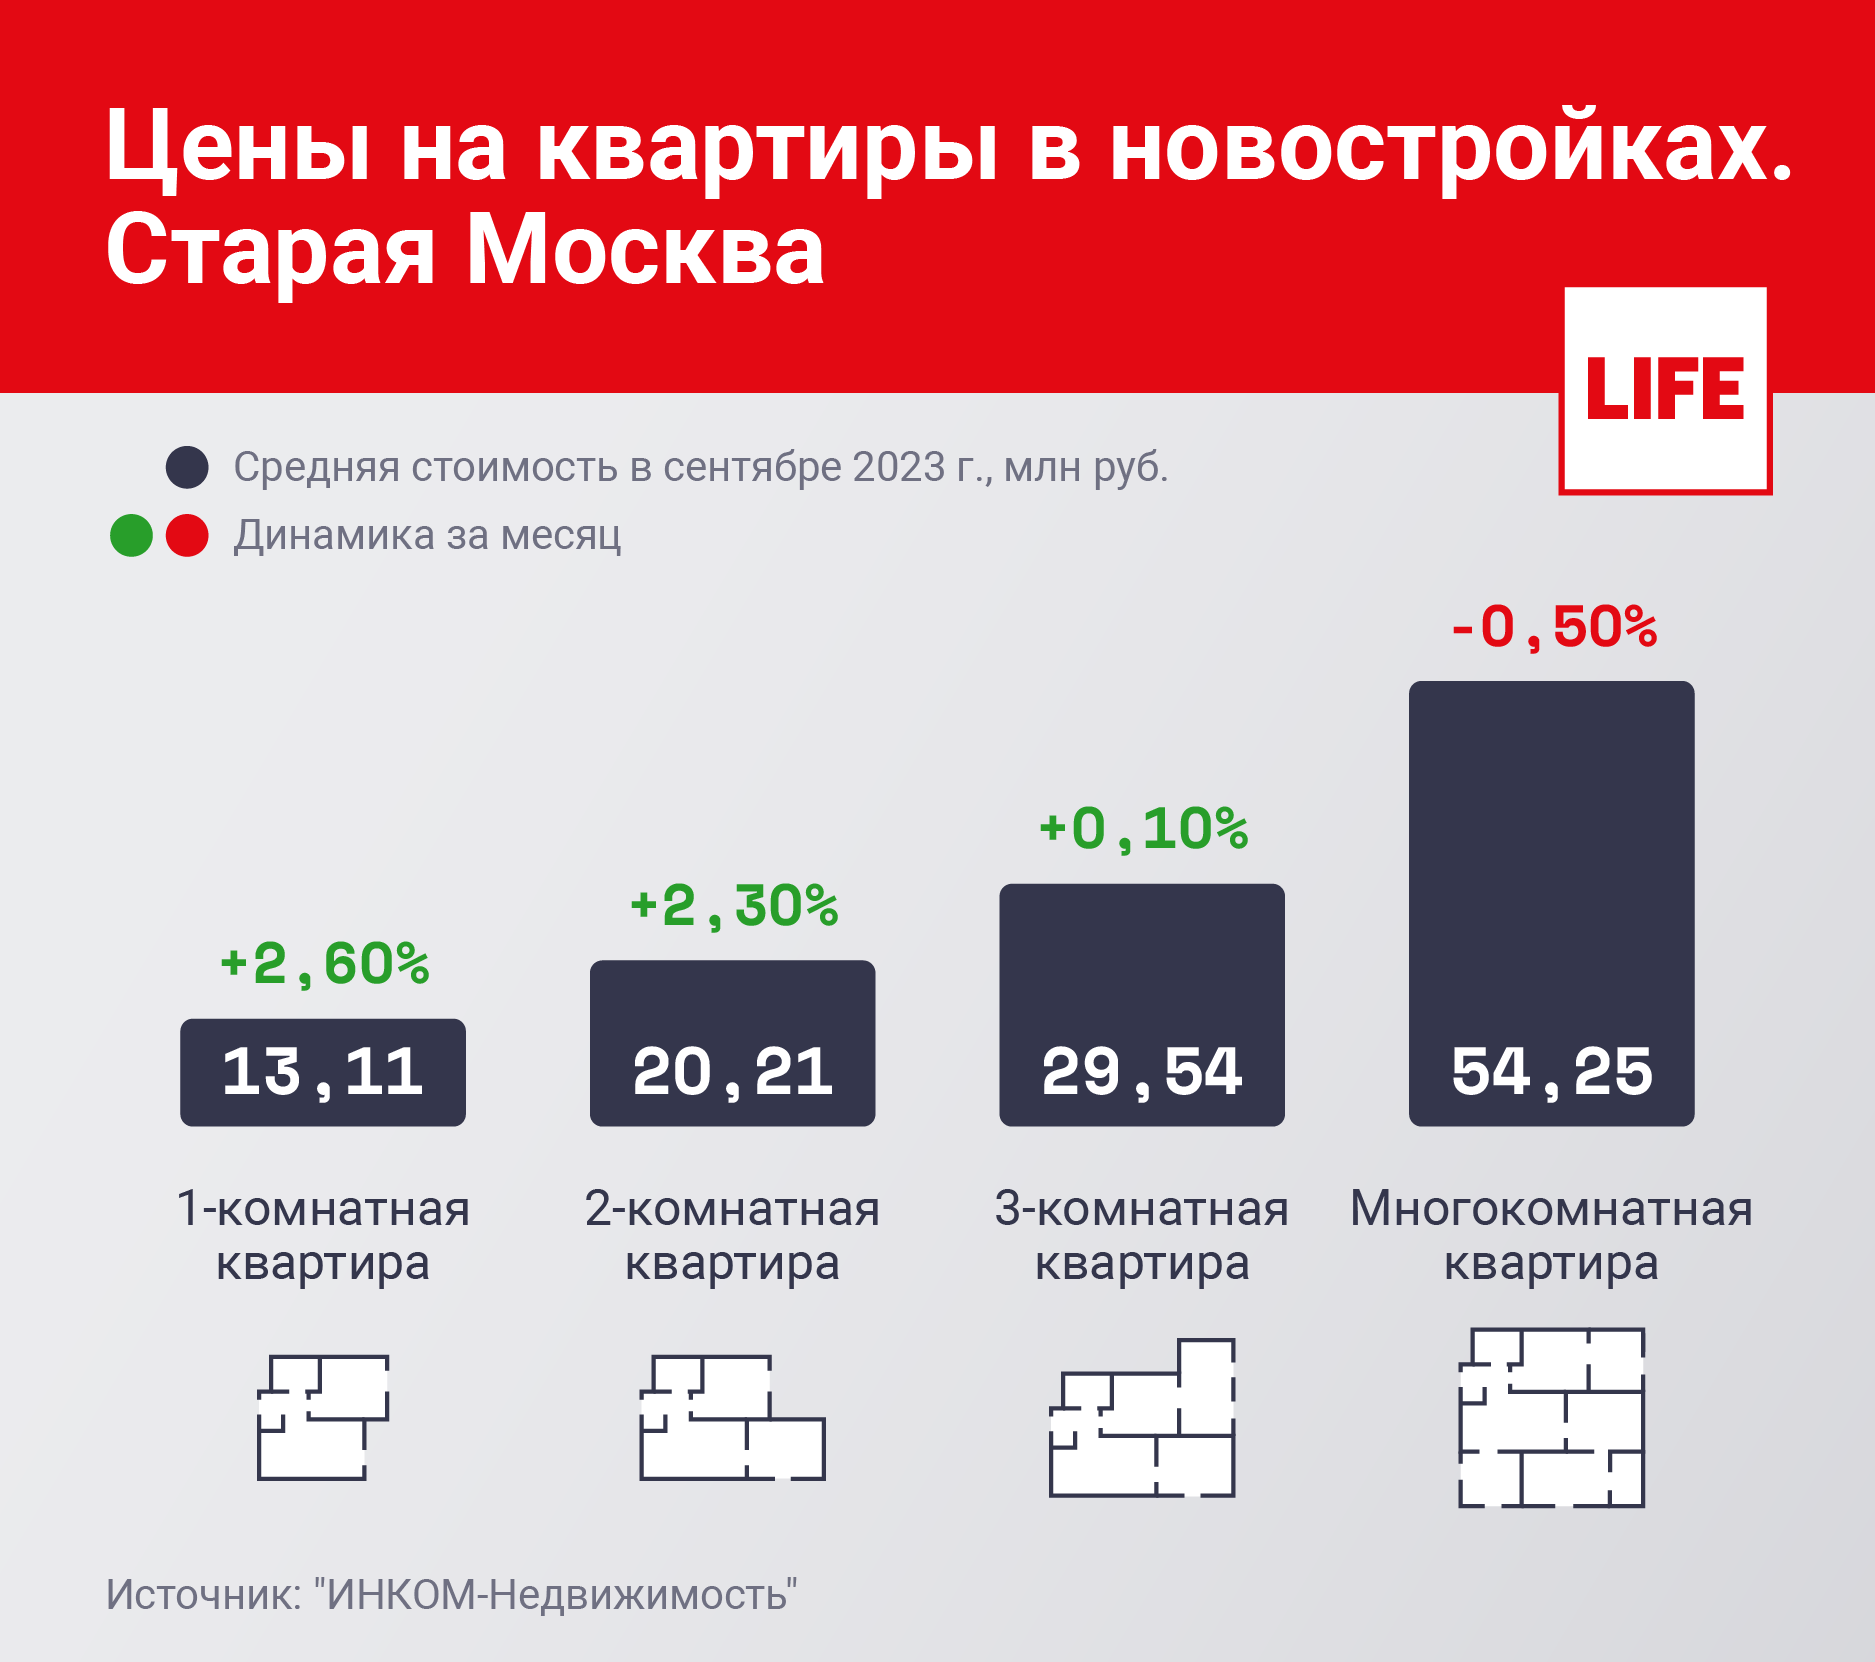 Цены на квартиры в новостройках. Старая Москва. Инфографика © LIFE